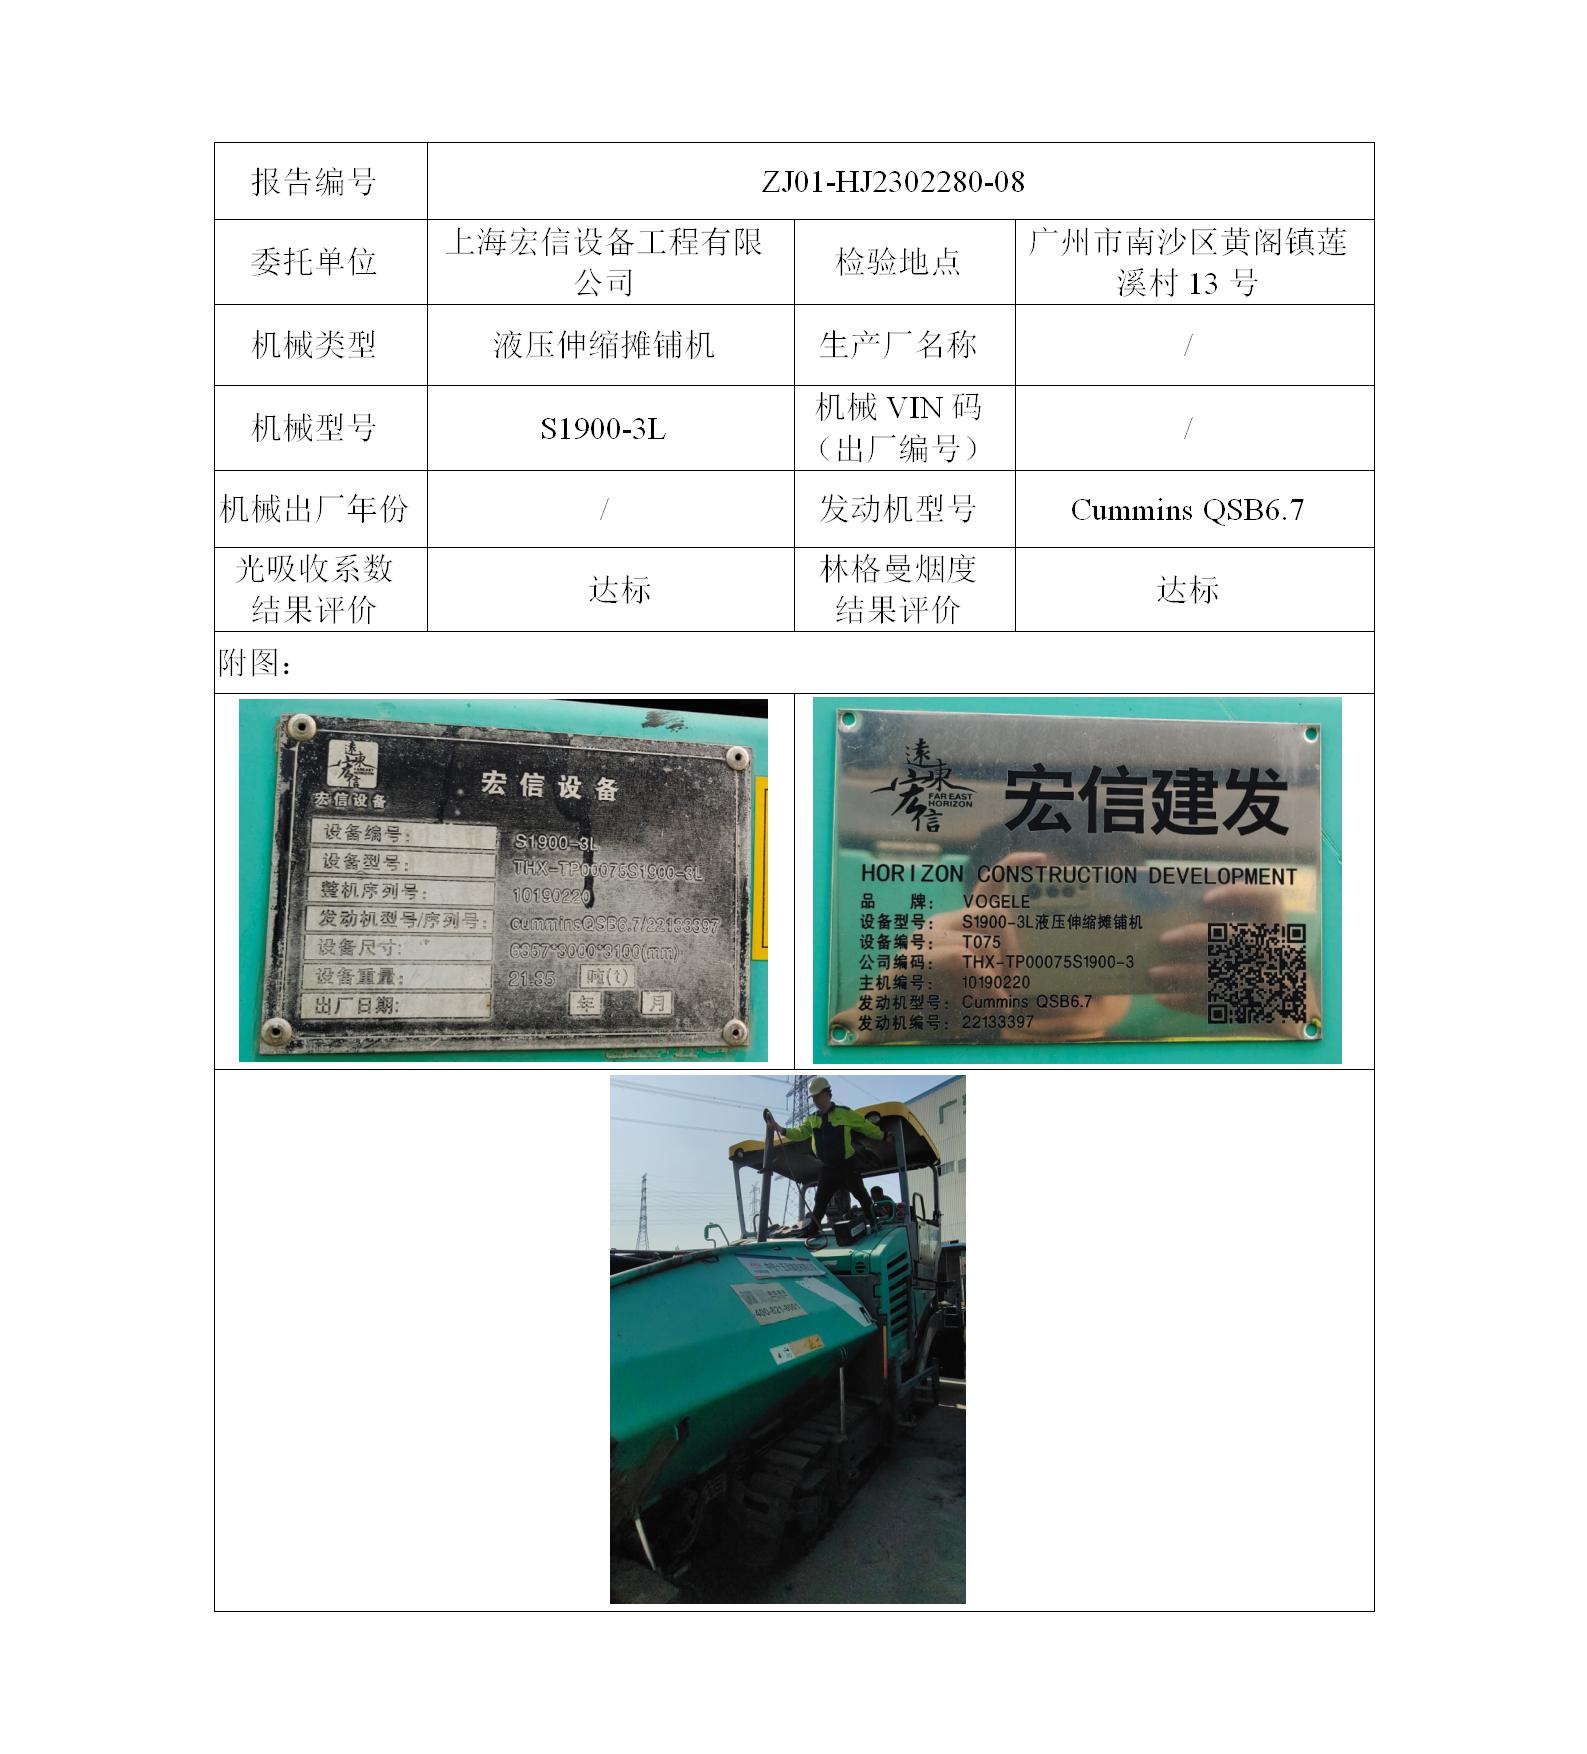 委托-ZJ01-HJ2302280-08上海宏信设备工程有限公司（叉车废气）二维码-陈咏娟_01.jpg